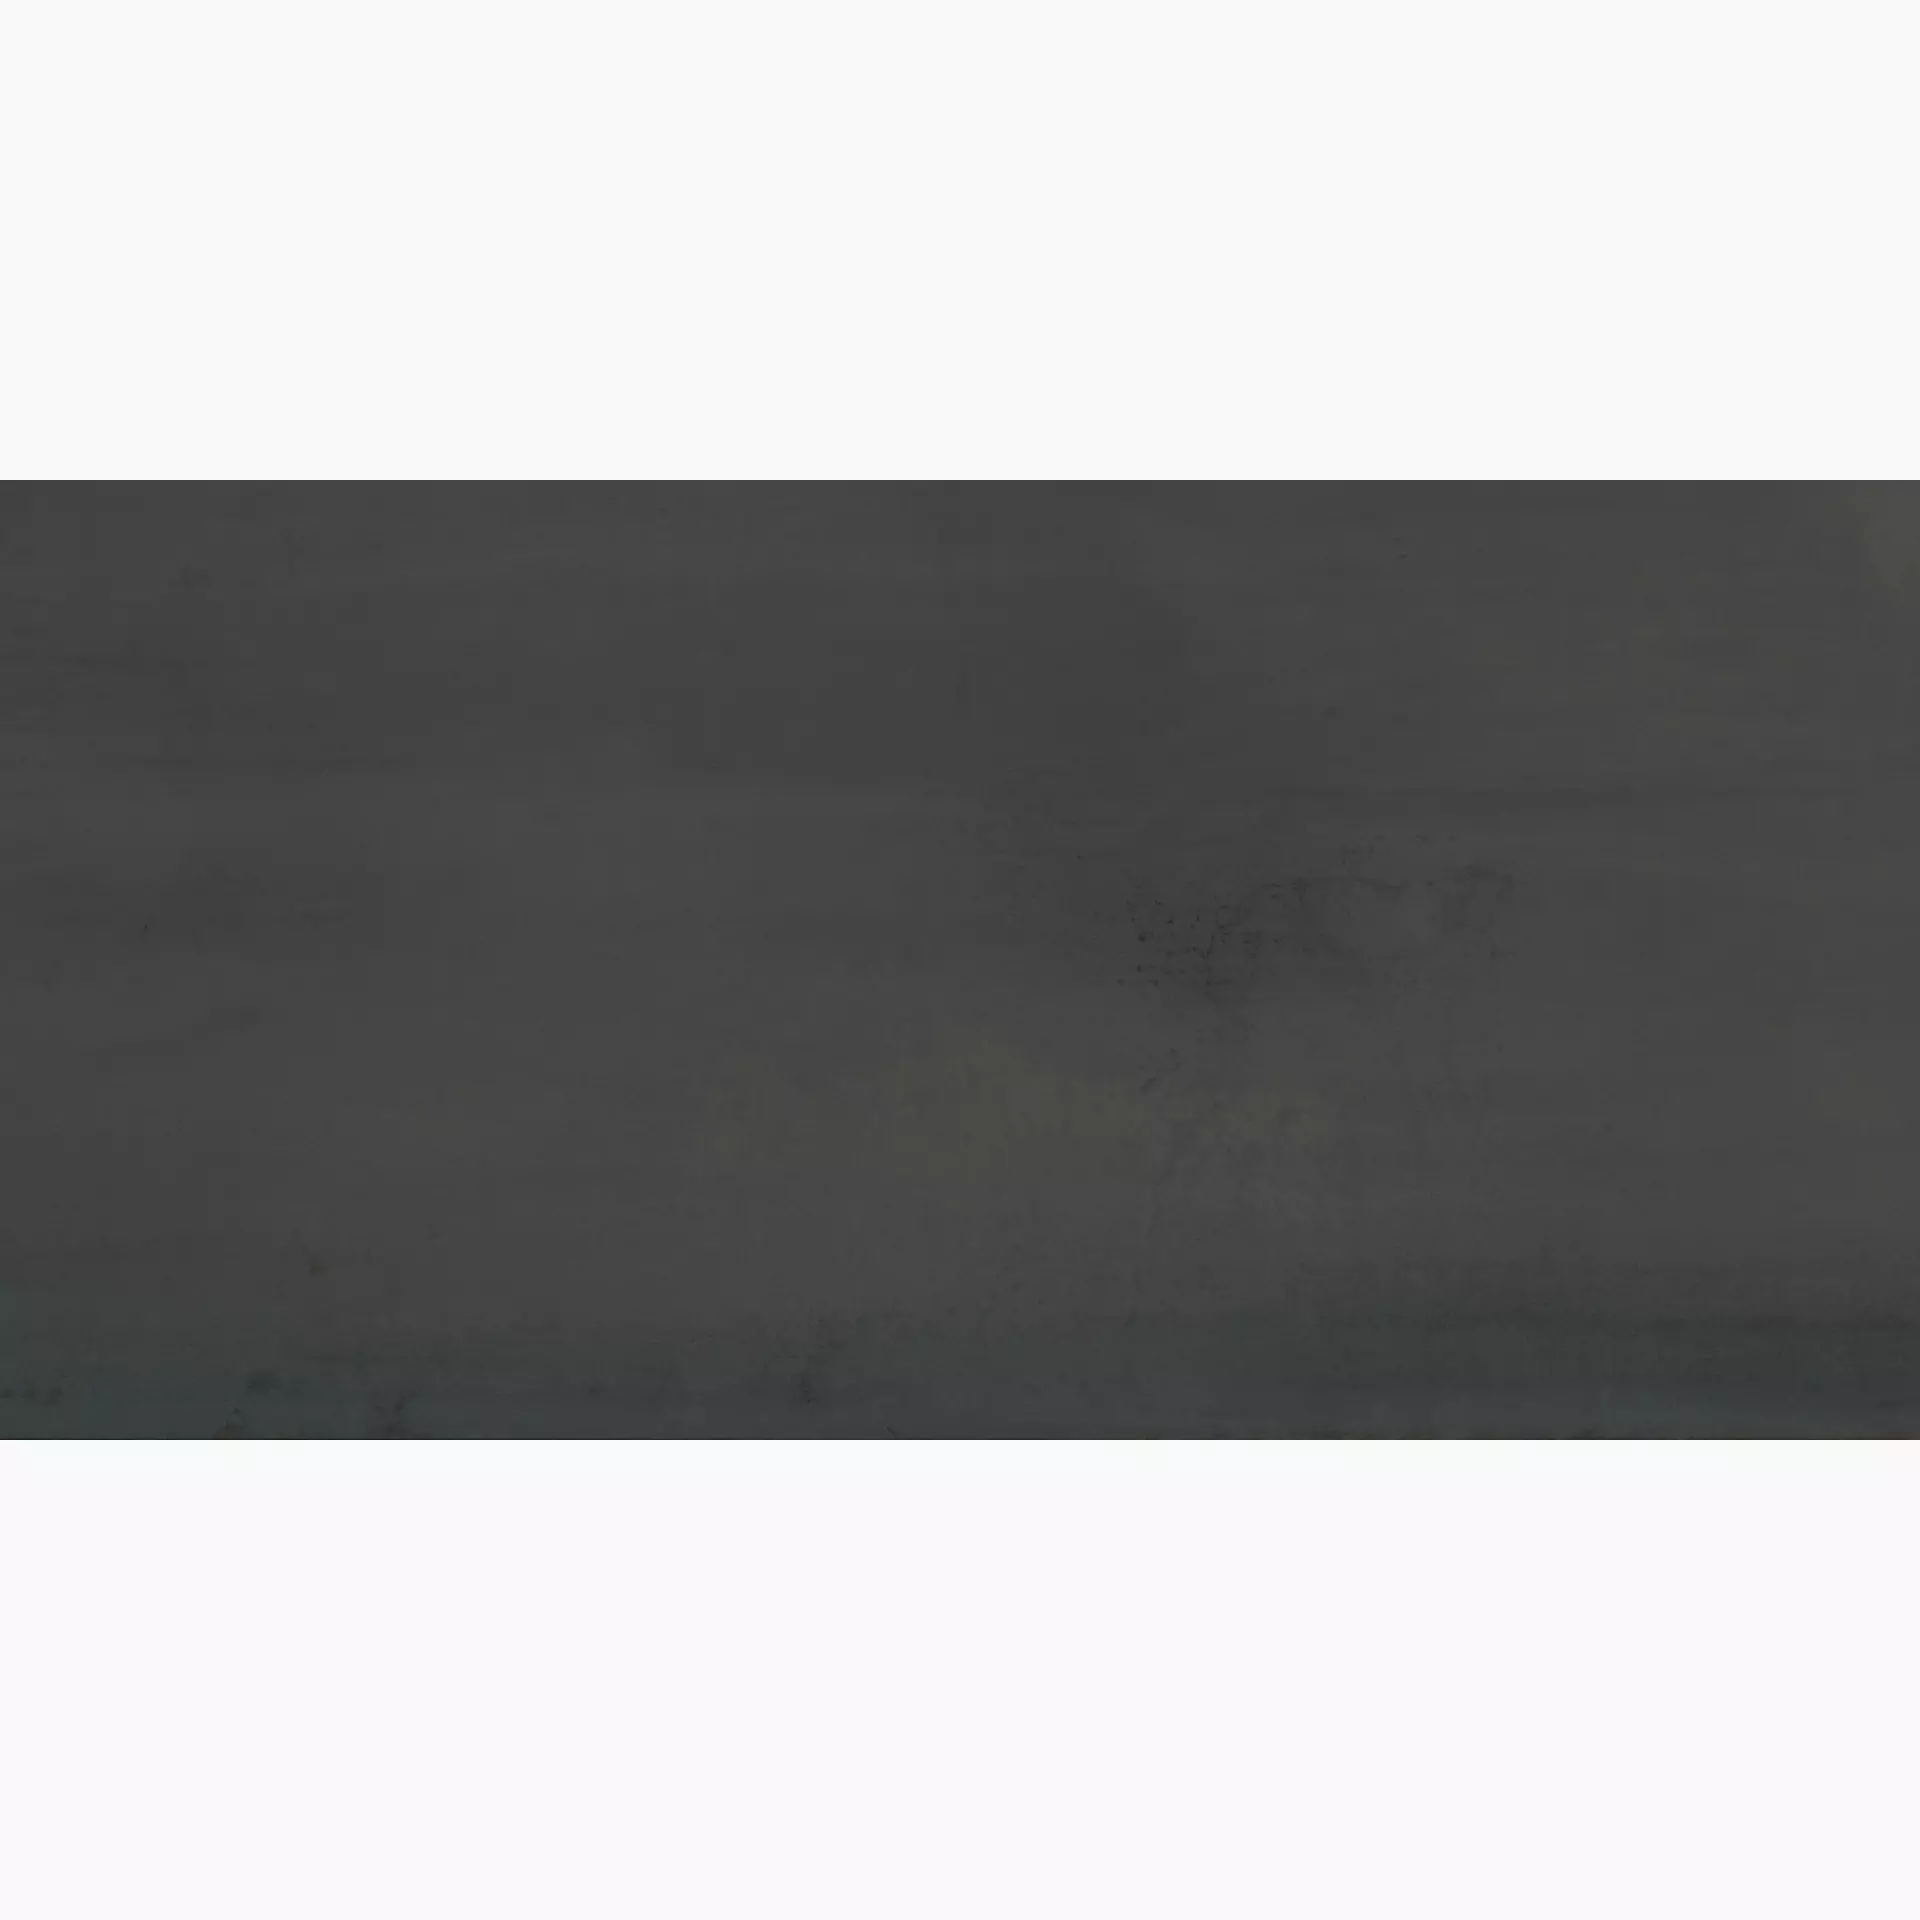 Ariostea Ultra Metal Black Plate Soft UMT6S157577 75x150cm 6mm